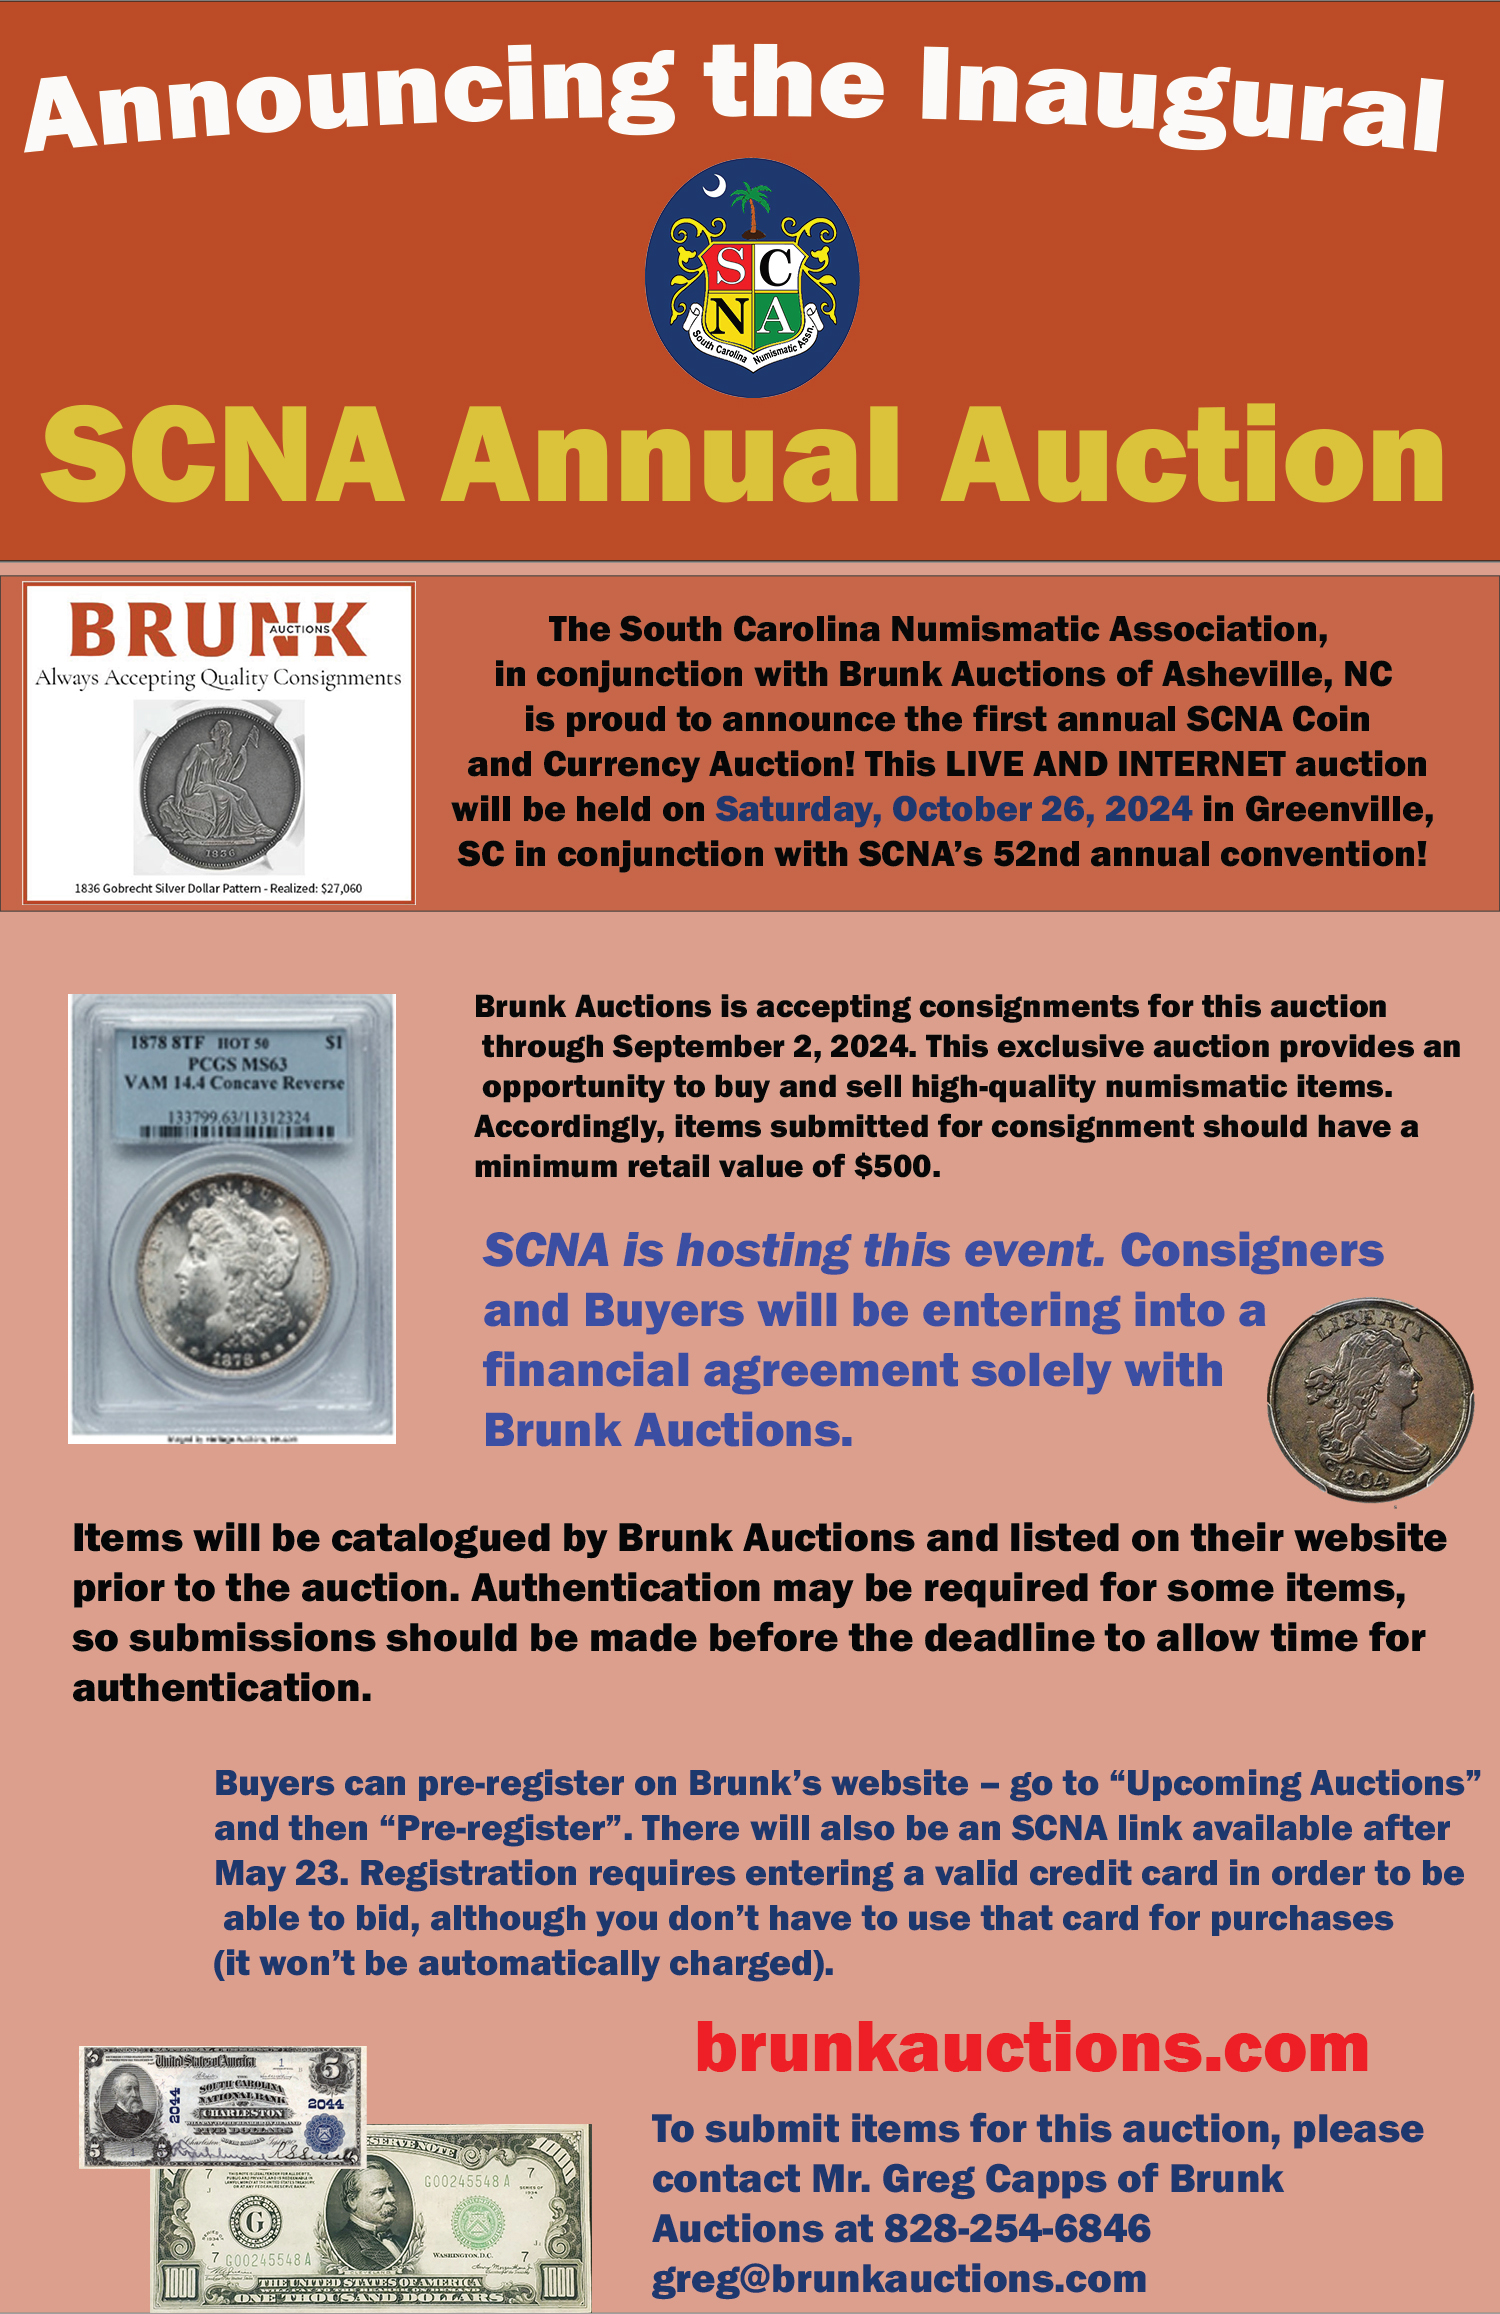 Brunk Auctions